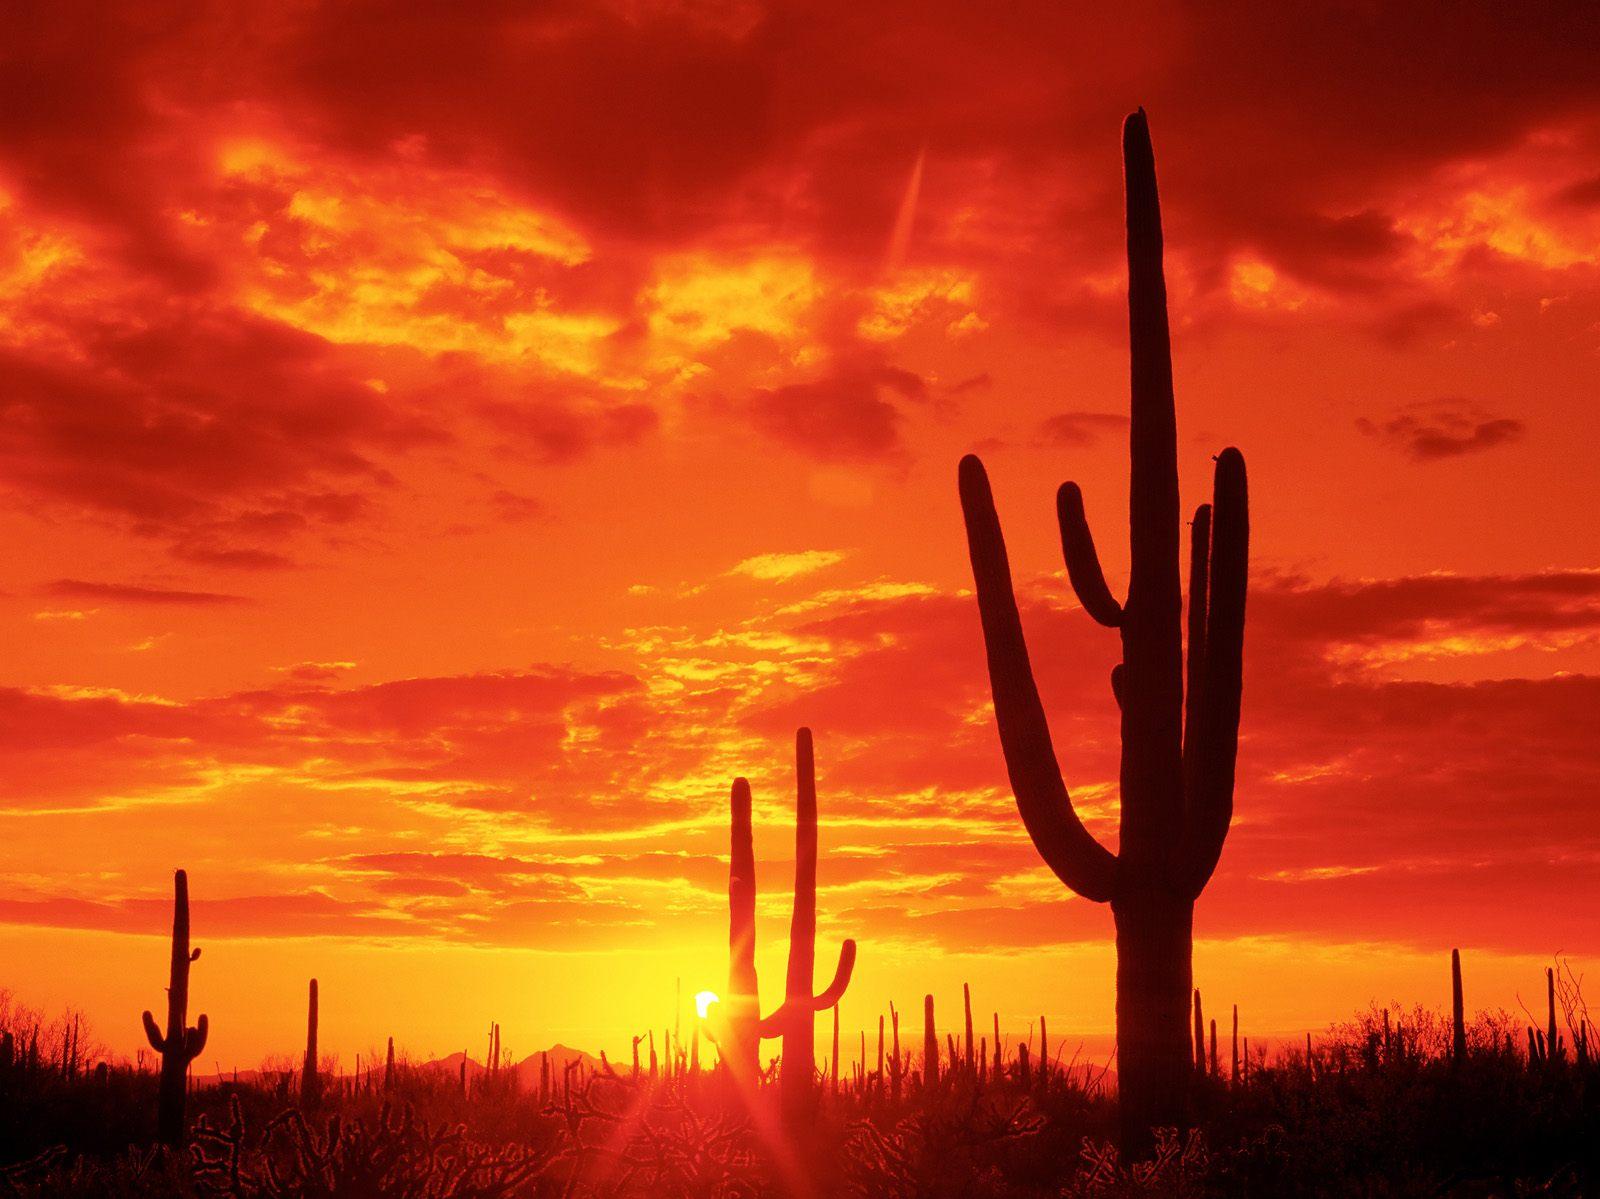 Free download Free HQ Burning Sunset Saguaro National Park Arizona